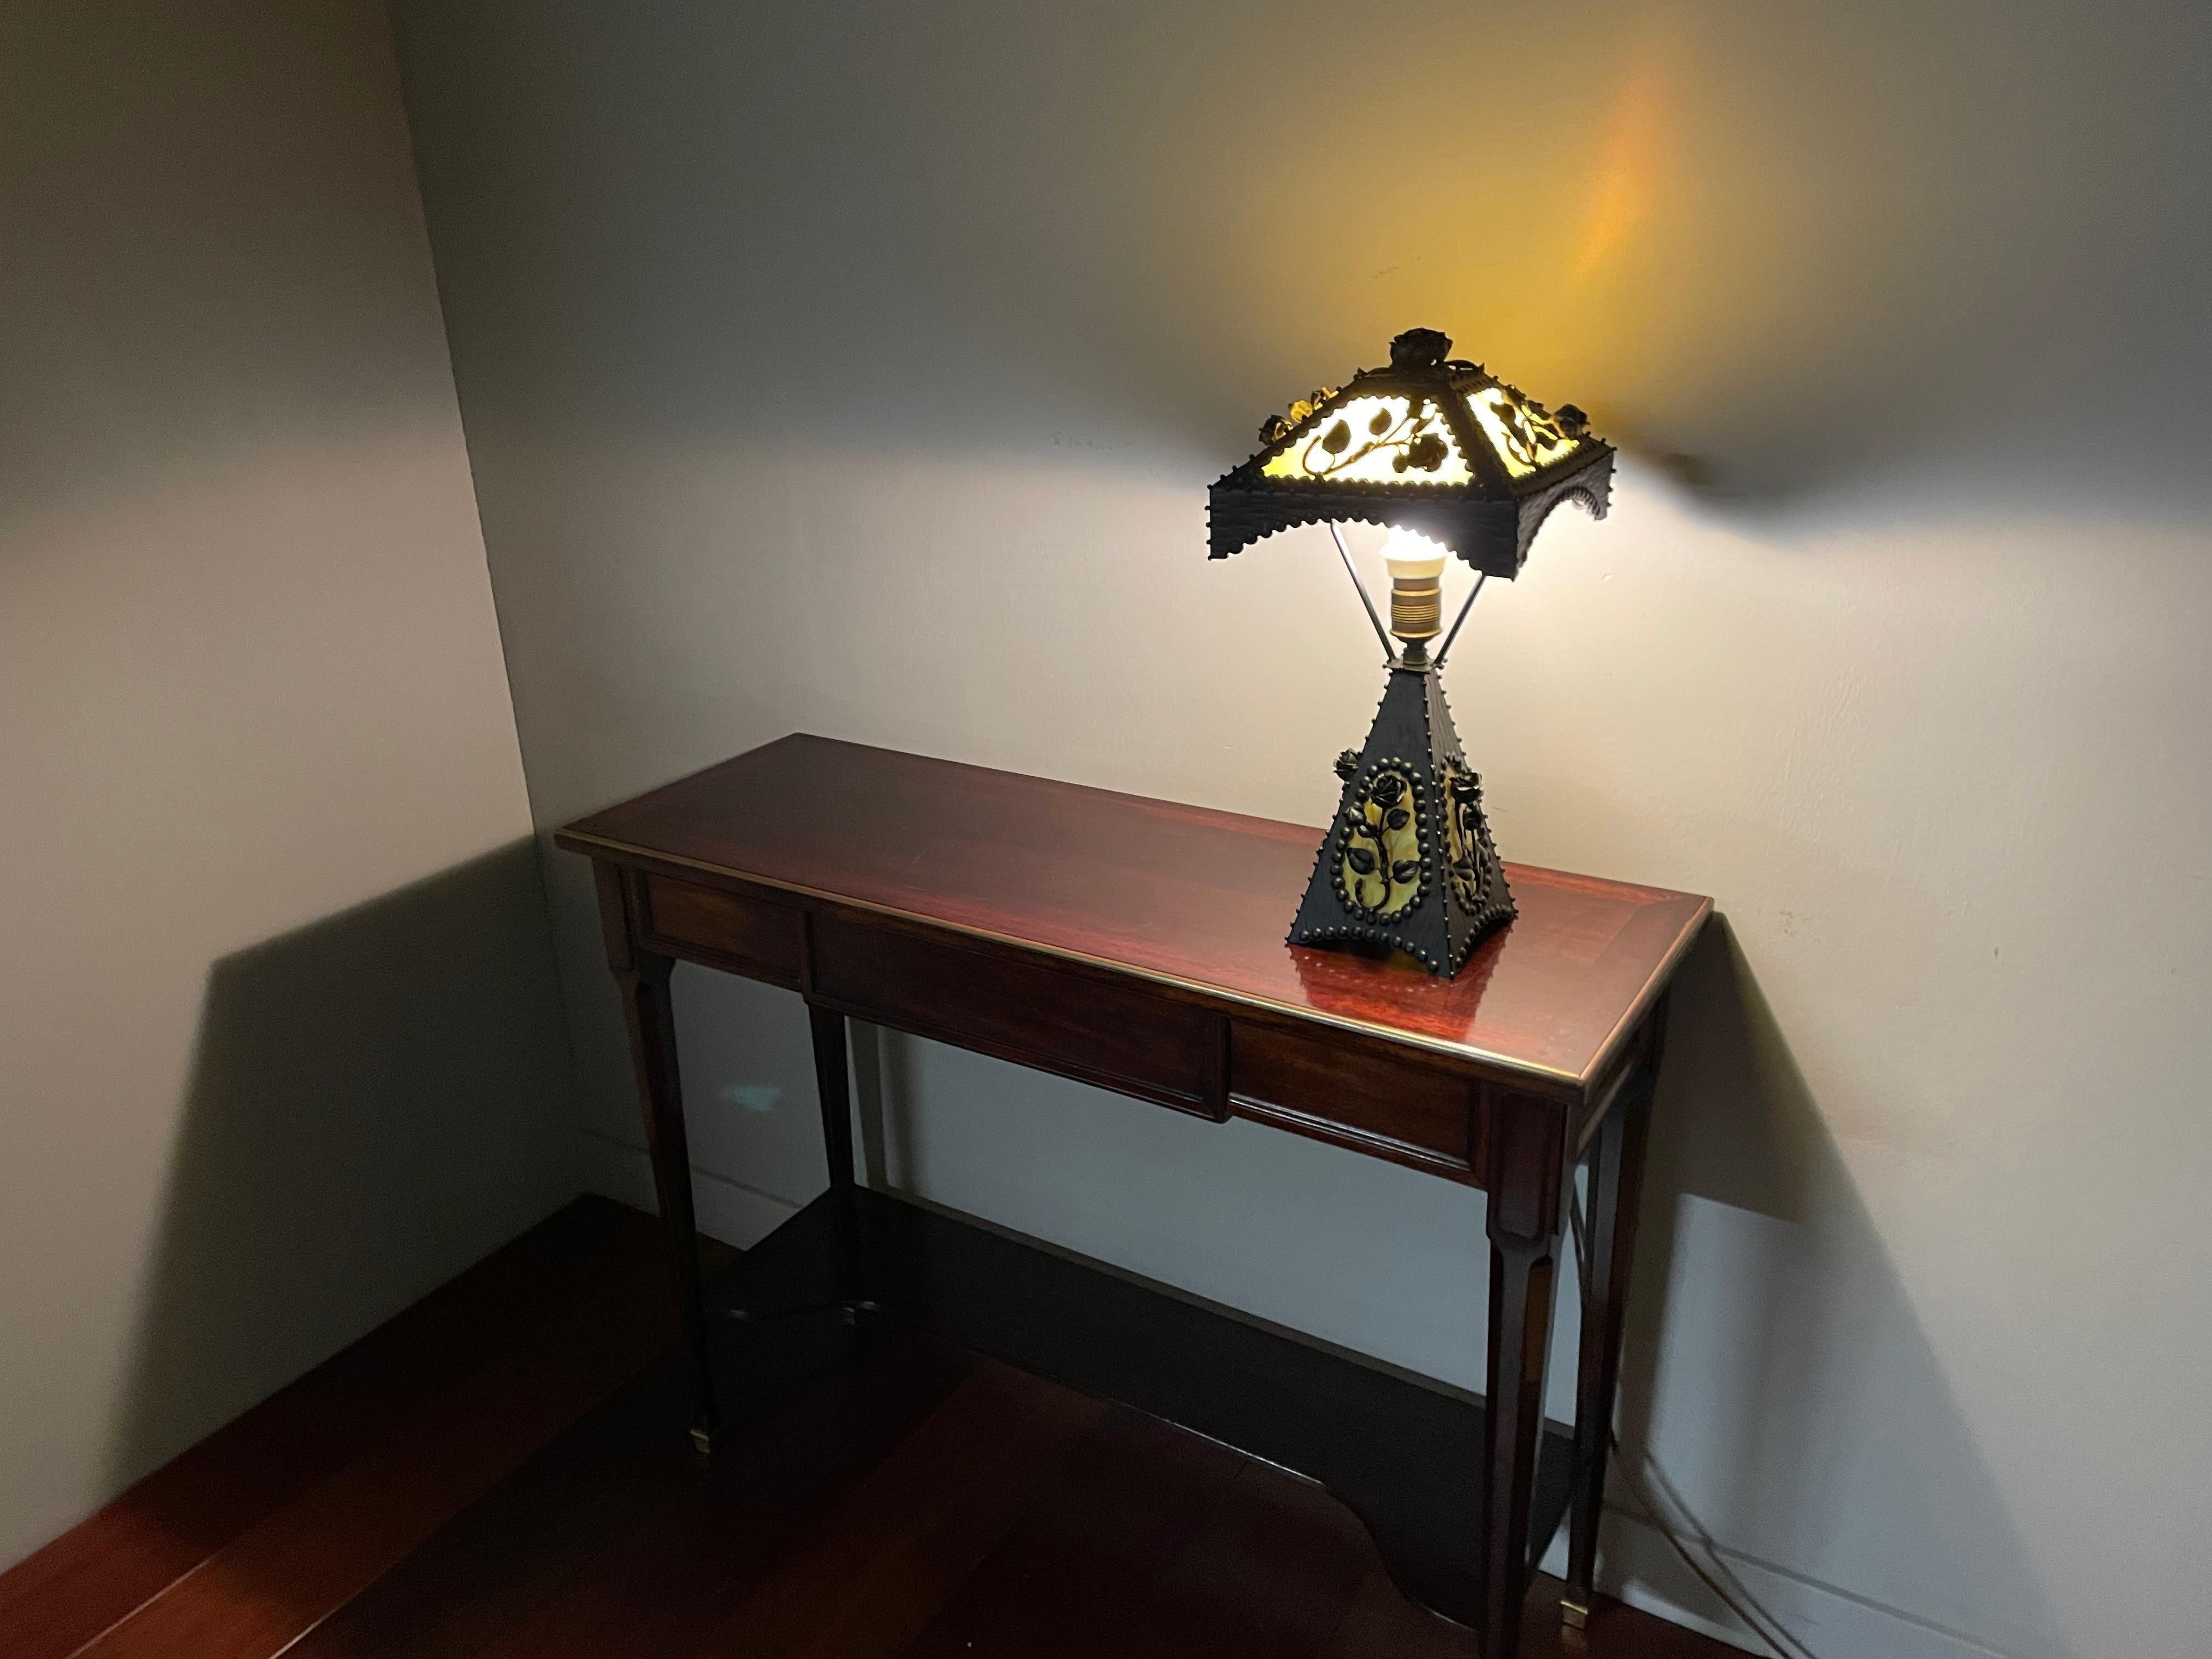 Lampe de table ou de bureau de qualité exceptionnelle et de style Arts & Crafts.

Si vous aimez le style Arts and Crafts en général et les roses en particulier, cette lampe de table pourrait être parfaite pour votre maison ou votre bureau (à